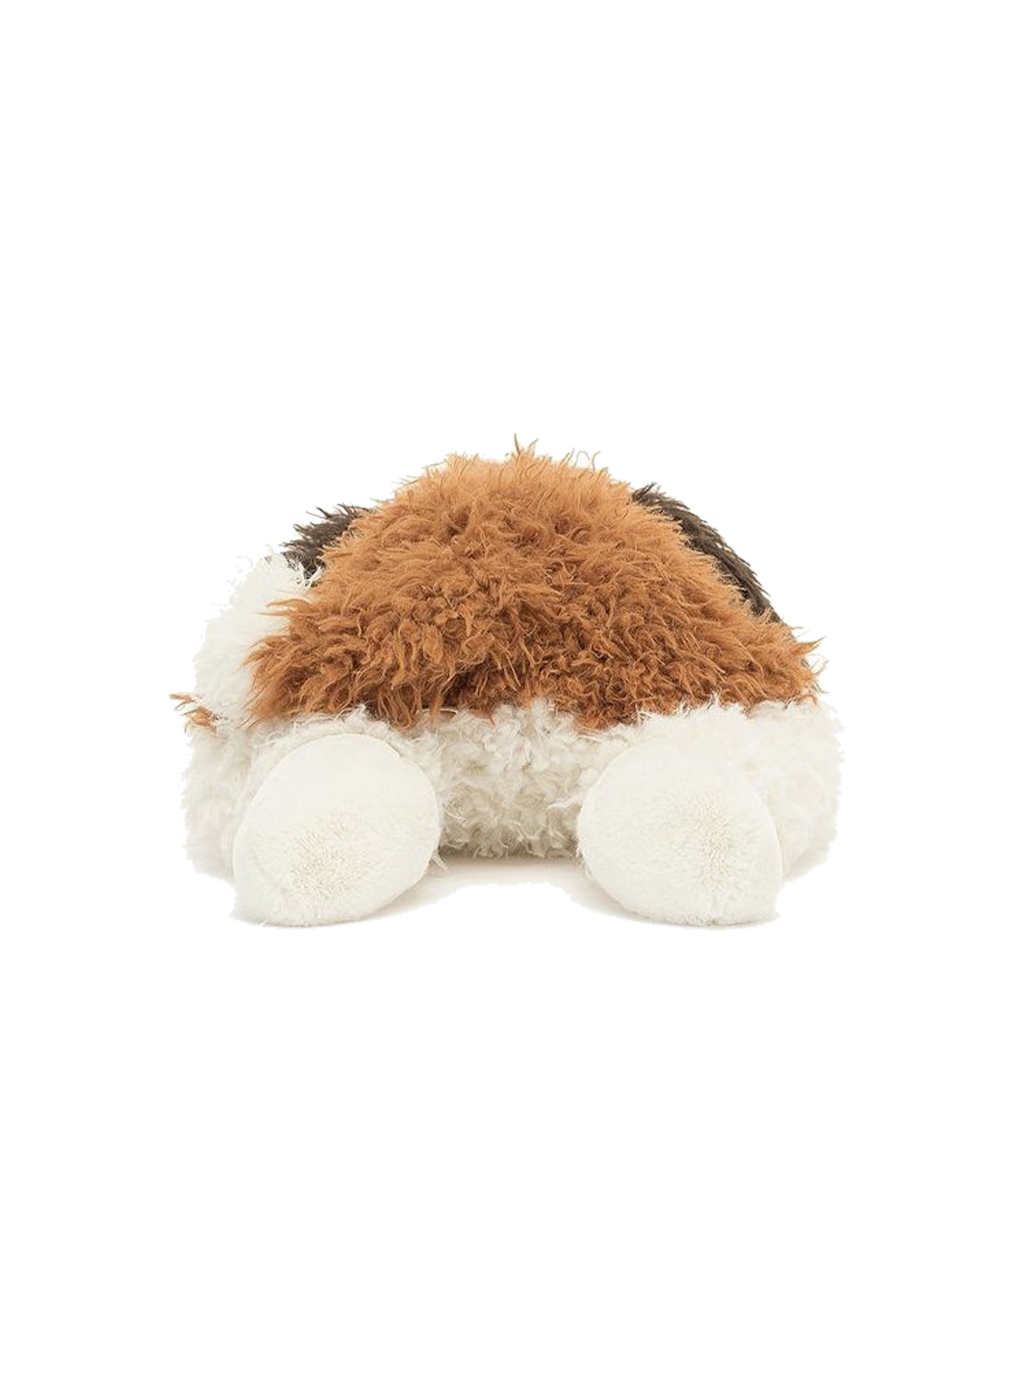 Floofie St. Bernard soft cuddly toy